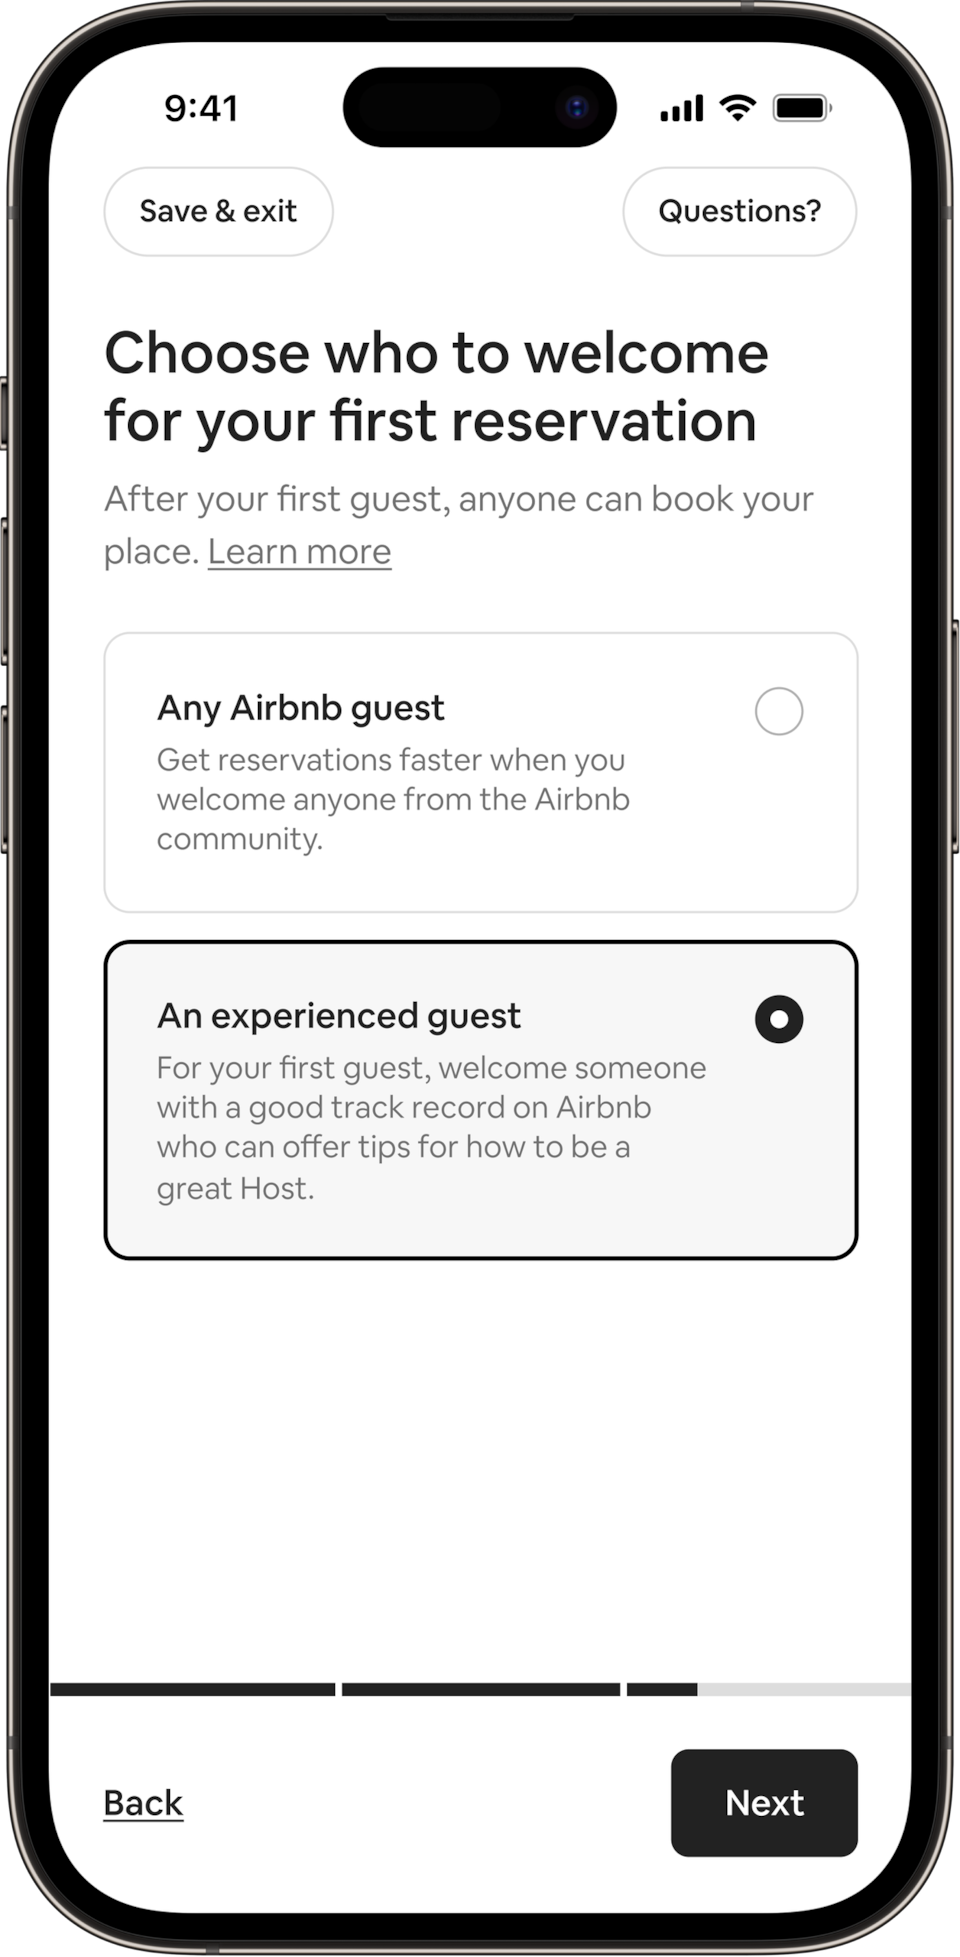 手機畫面顯示一個標題：「選擇首張訂單的接待對象。」旅居主人可以選擇接待任何Airbnb旅人，或只接待已有住宿經驗的旅人。畫面顯示用戶已選擇「具經驗的旅人」按鈕。